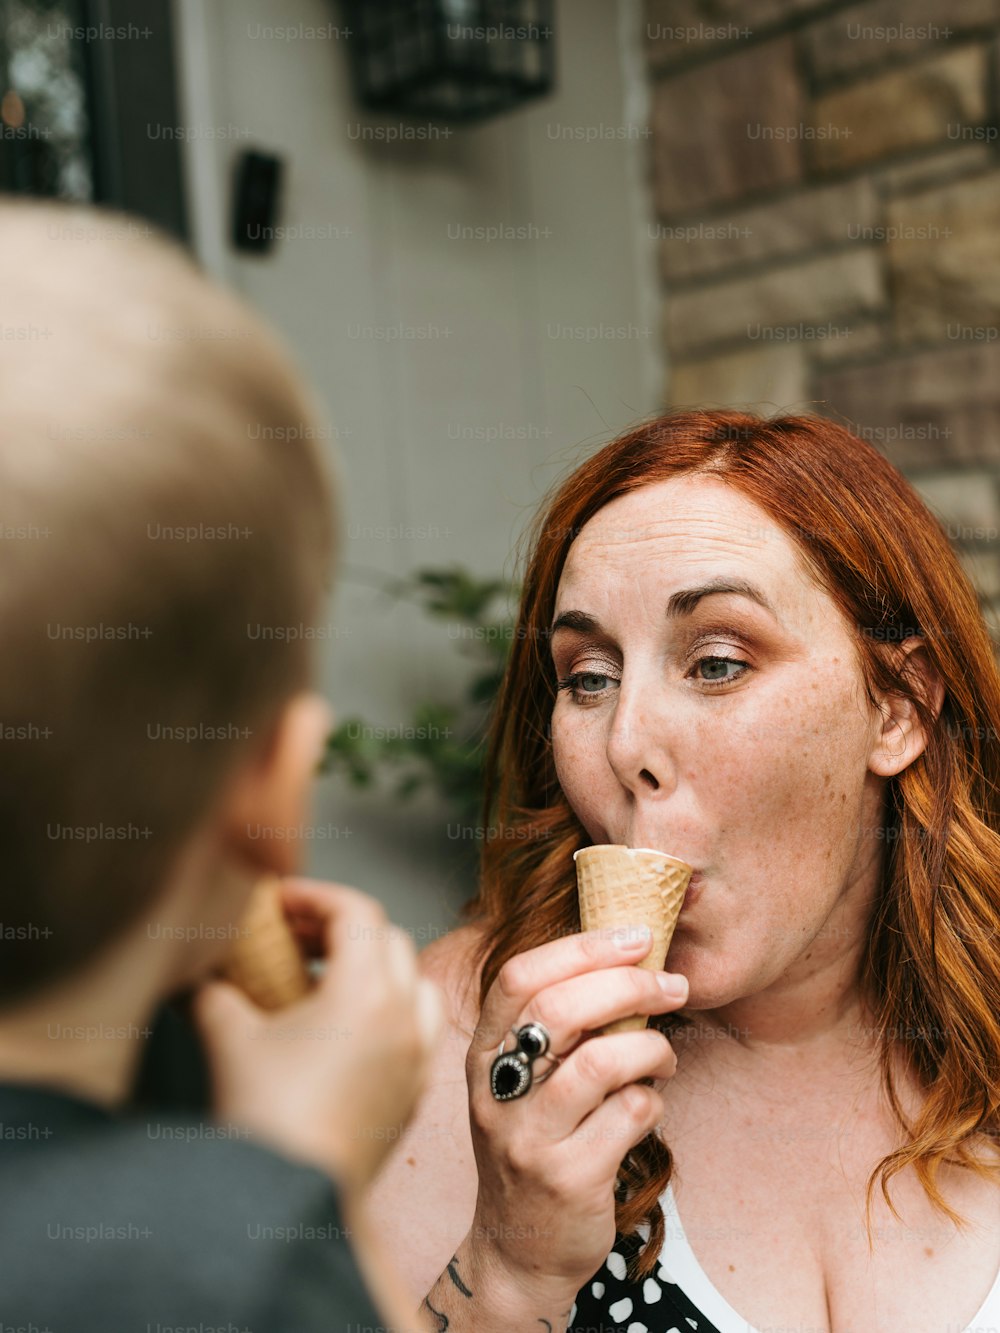 Una mujer comiendo un cono de helado frente a un hombre